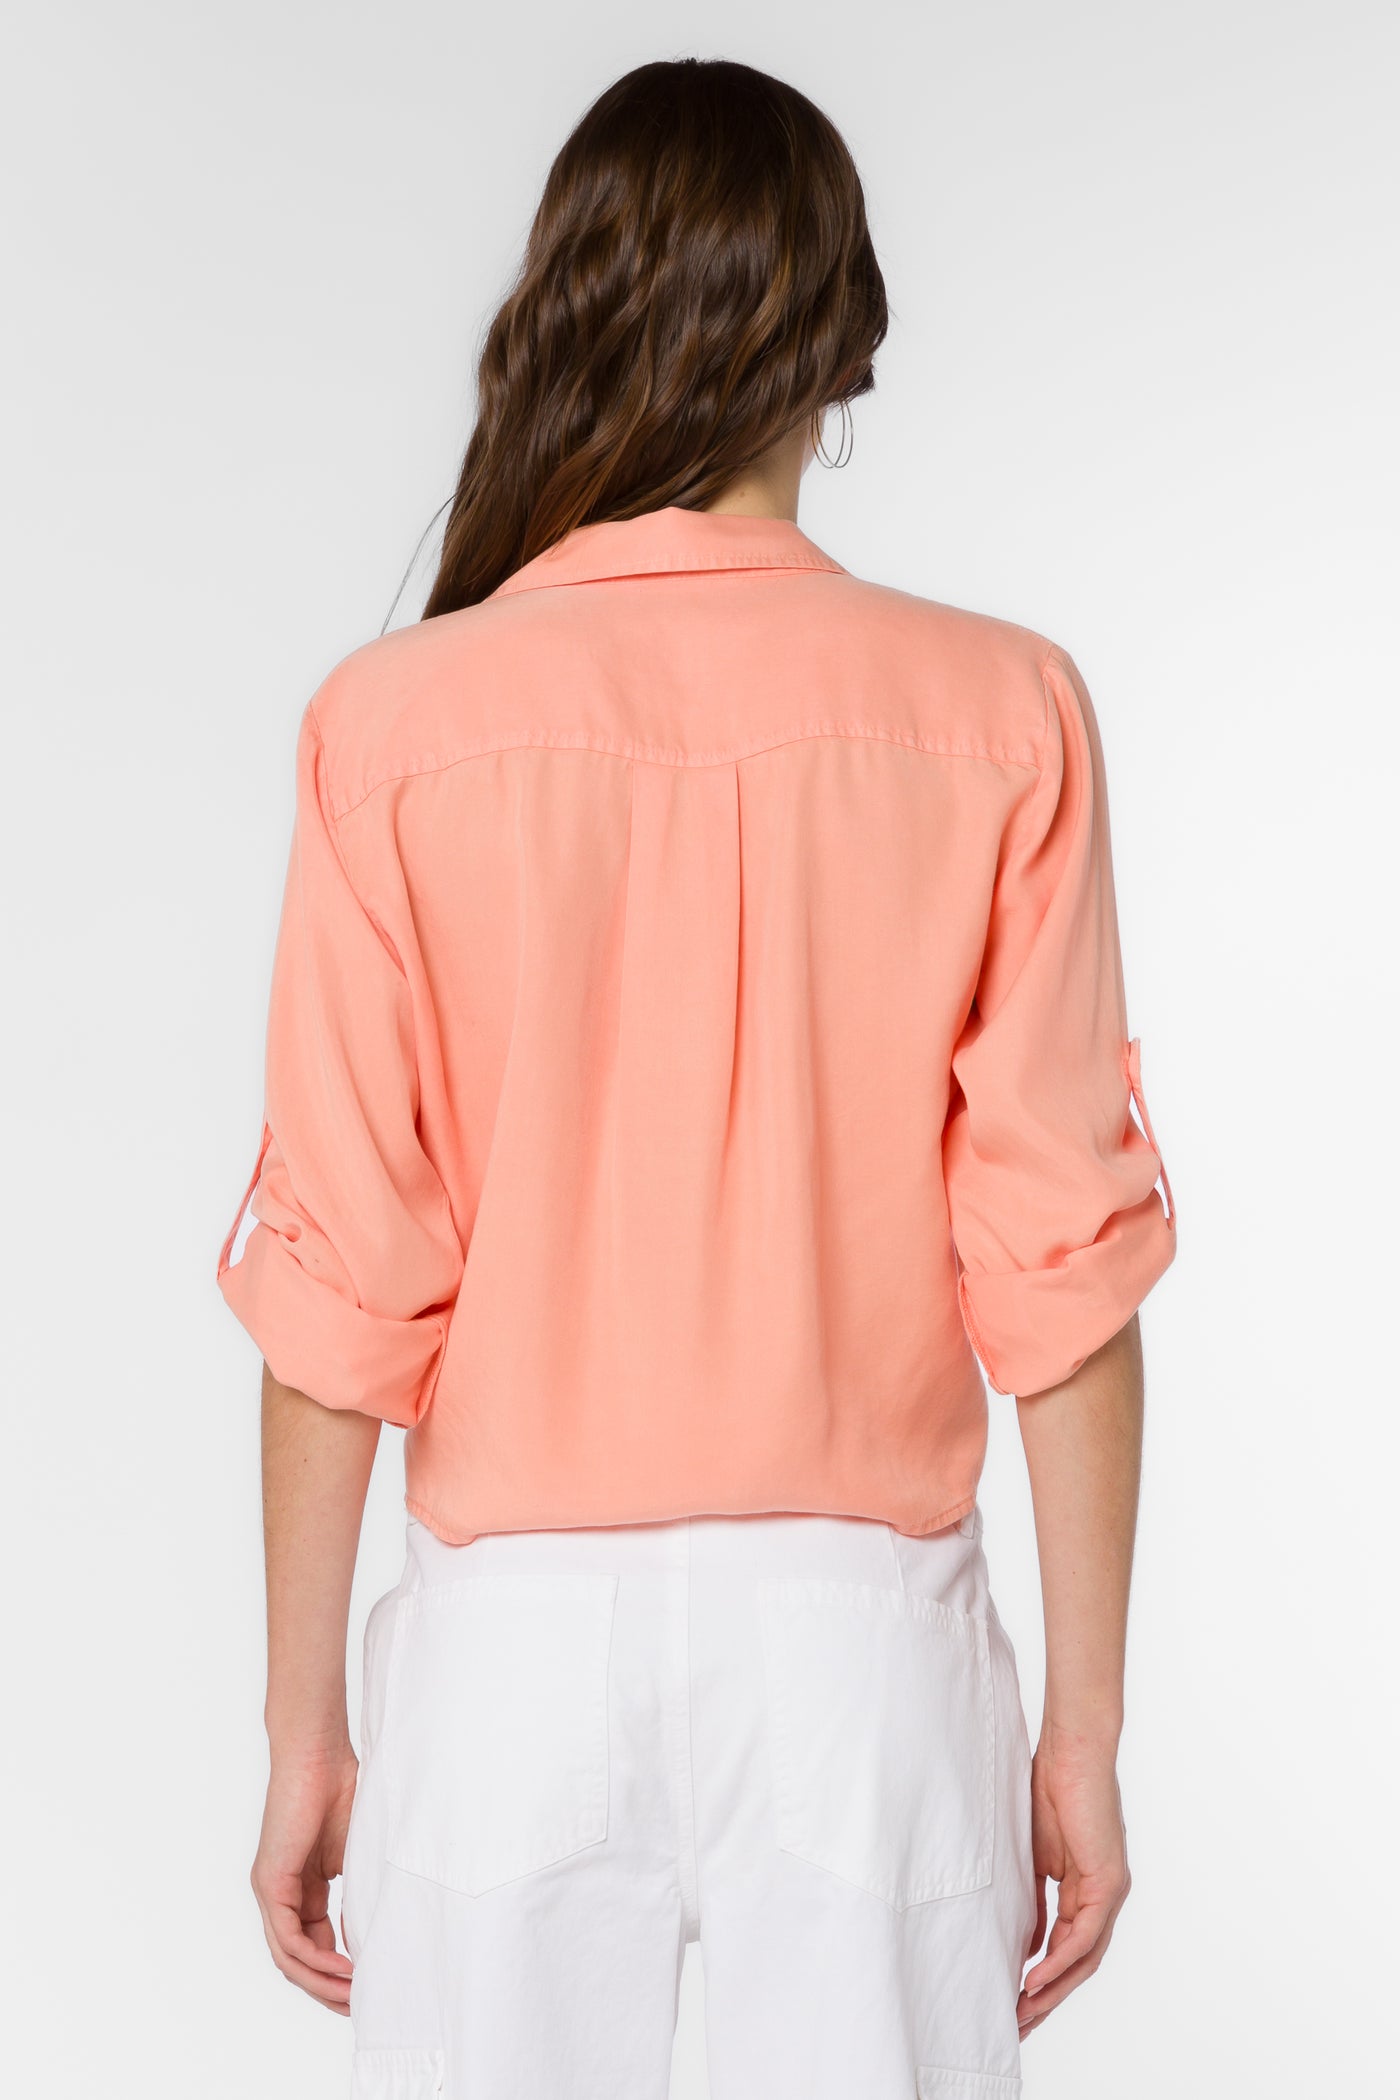 Solange Light Coral Shirt - Tops - Velvet Heart Clothing